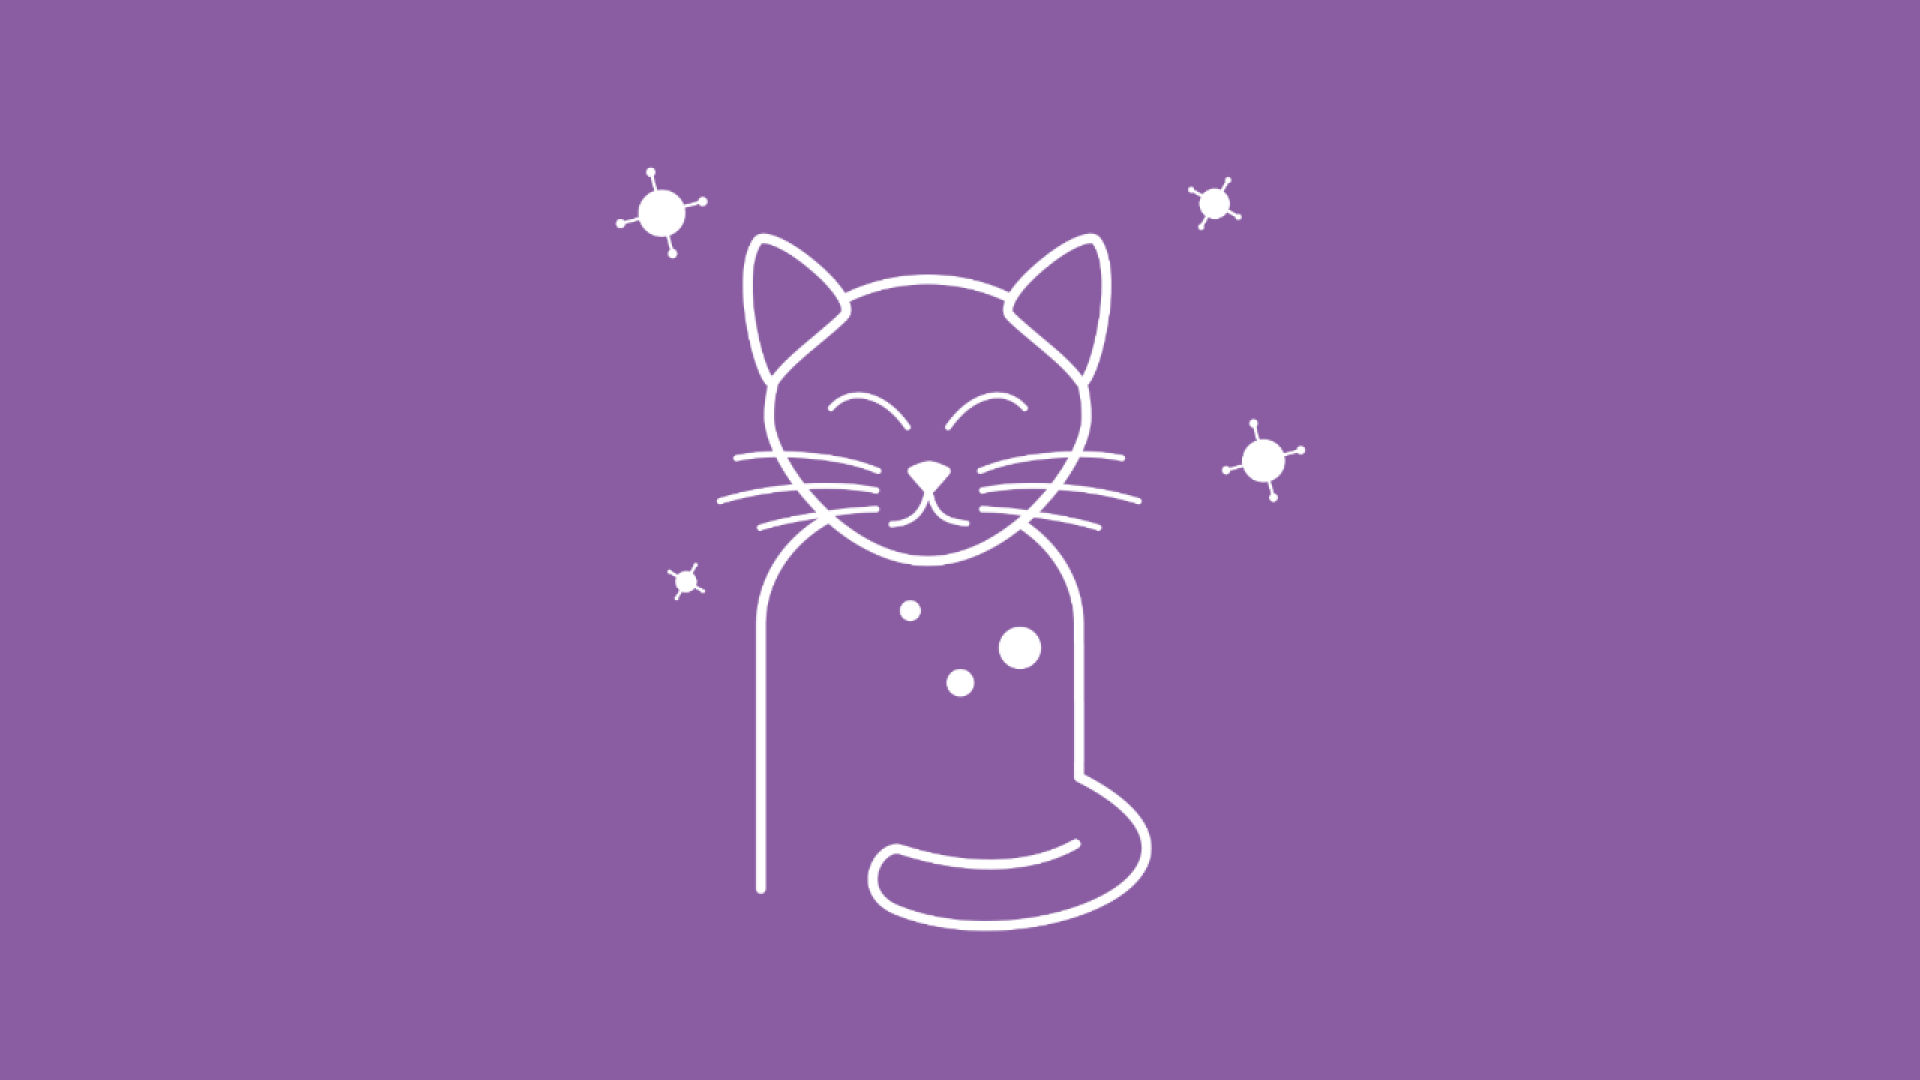 Um ein Katzen-Icon herum sind Bakterien abgebildet, die darstellen, dass die Katze an einer Allergie leidet